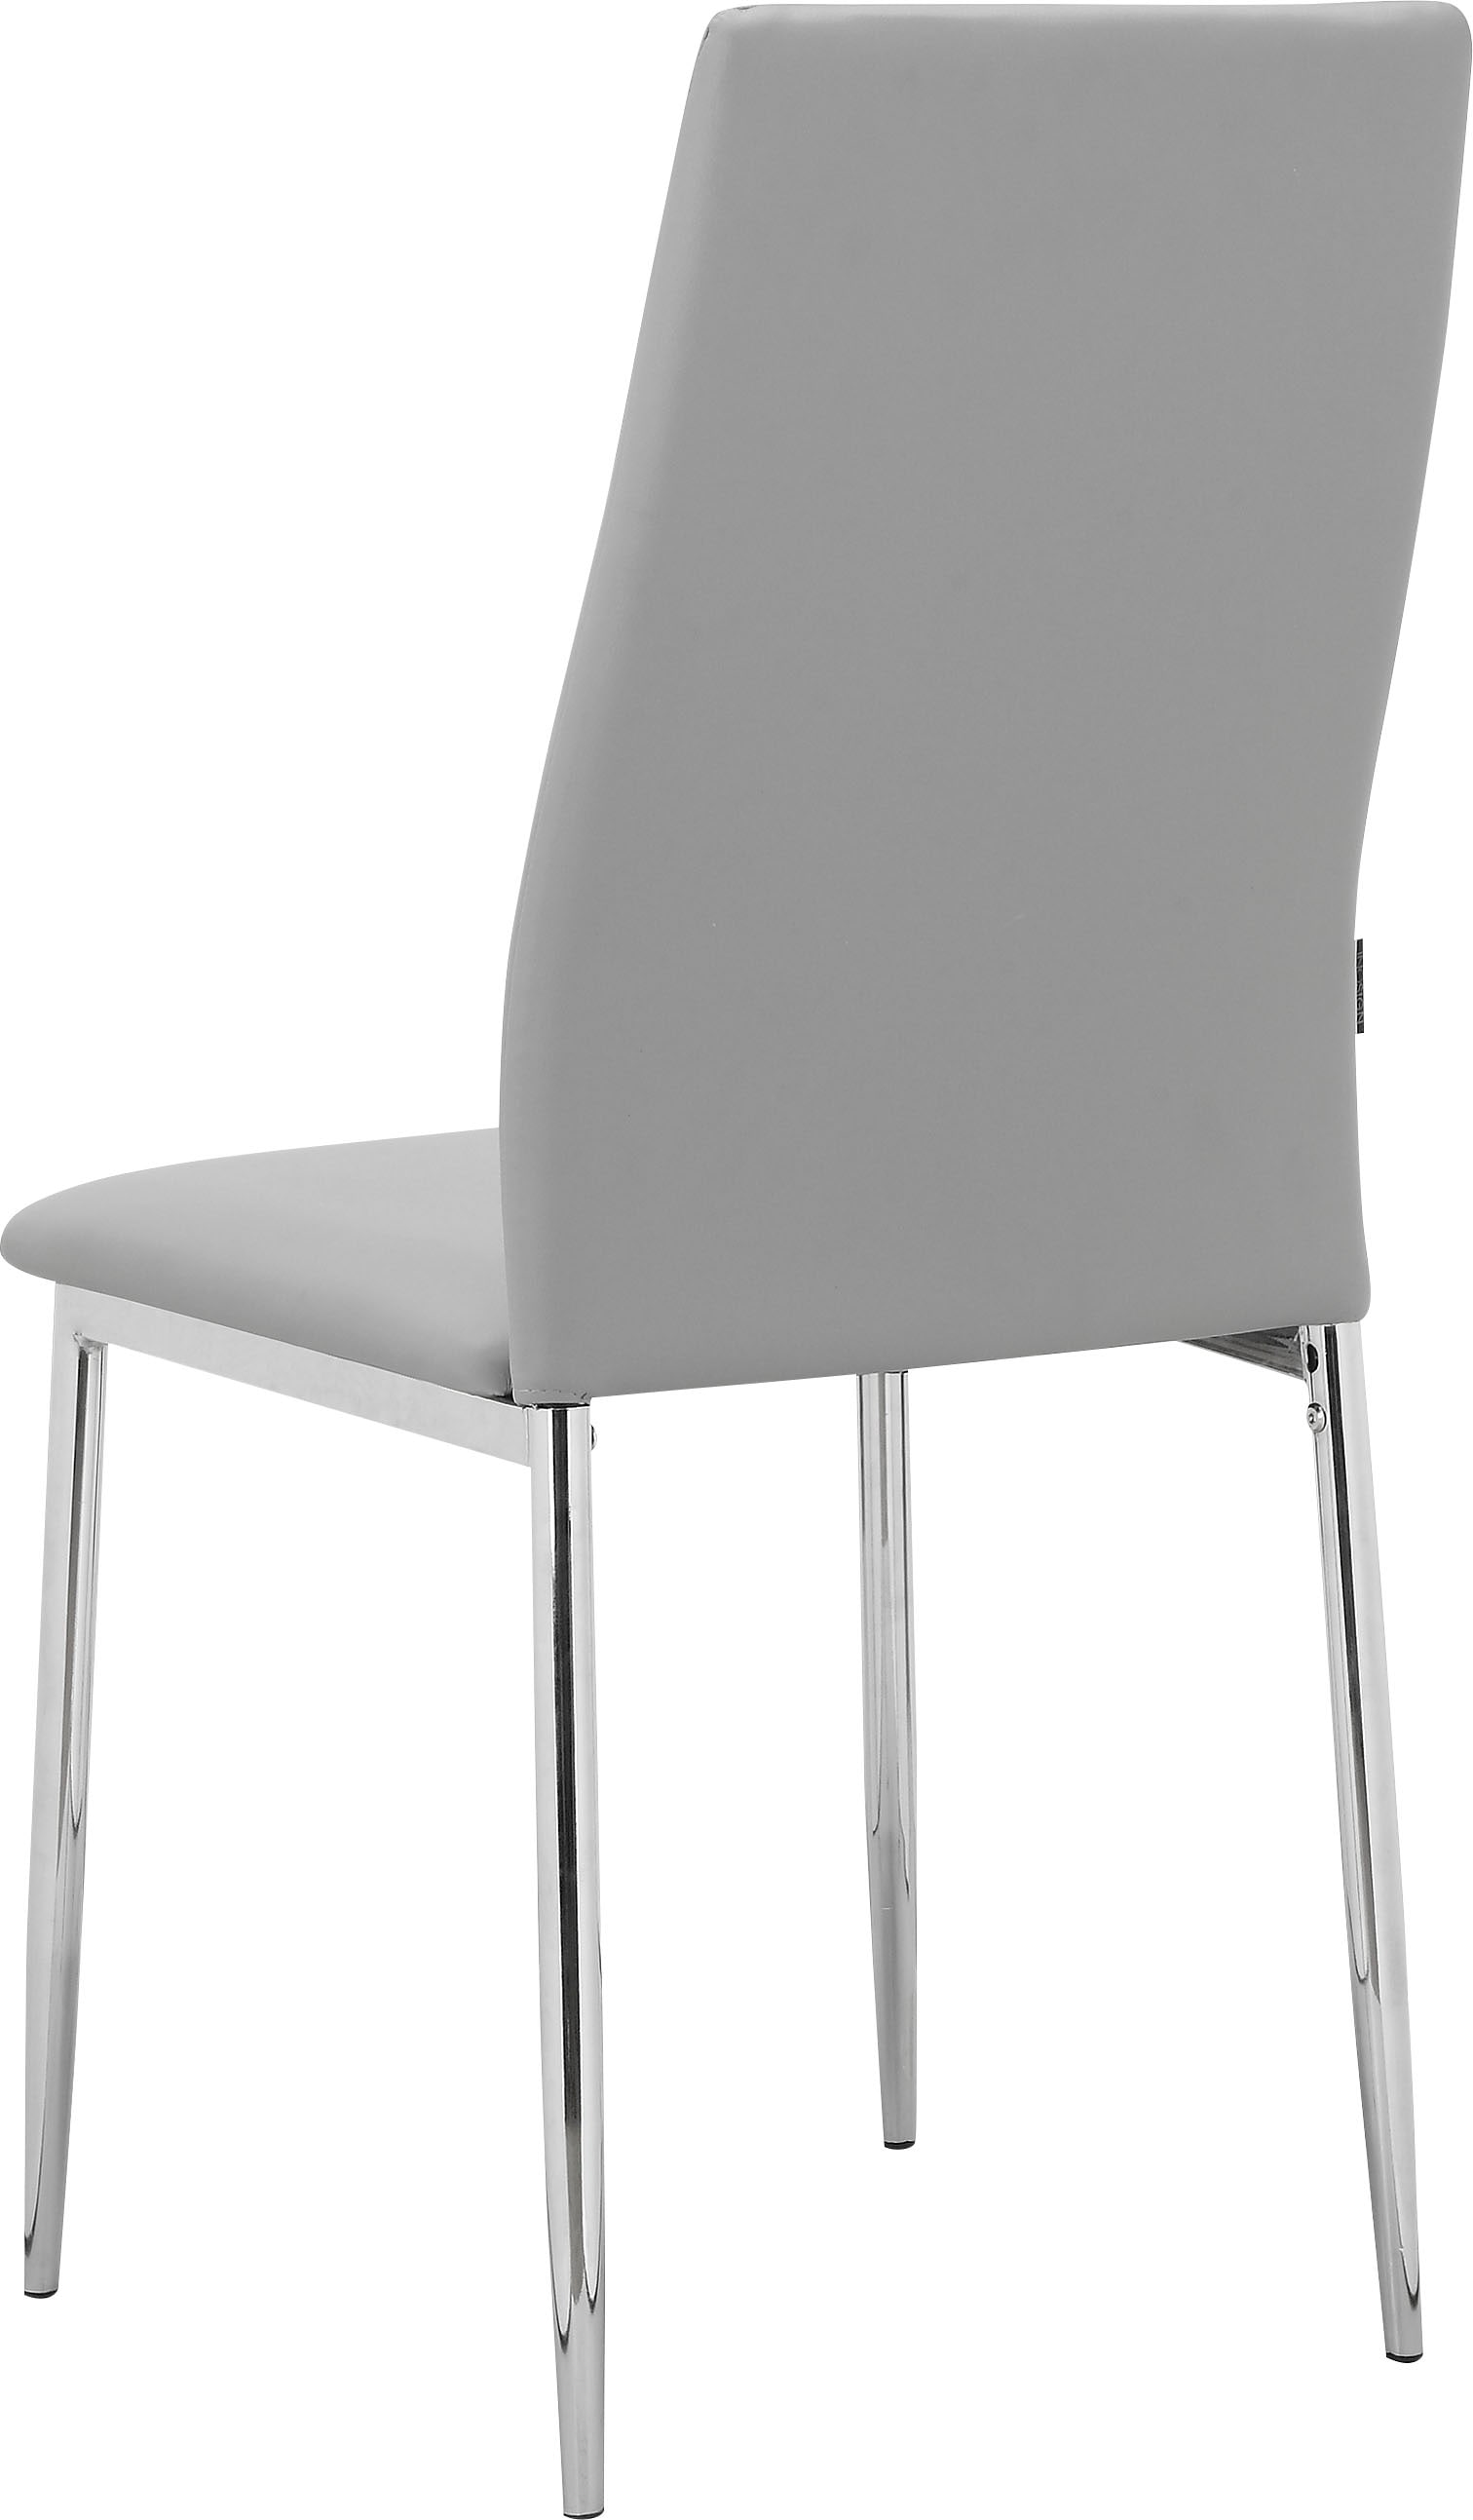 INOSIGN Esszimmerstuhl »Acilino«, 2 St., Kunstleder, im 2er Set erhältlich, mit Sitz und Rücken gepolstert, Sitzhöhe 49 cm